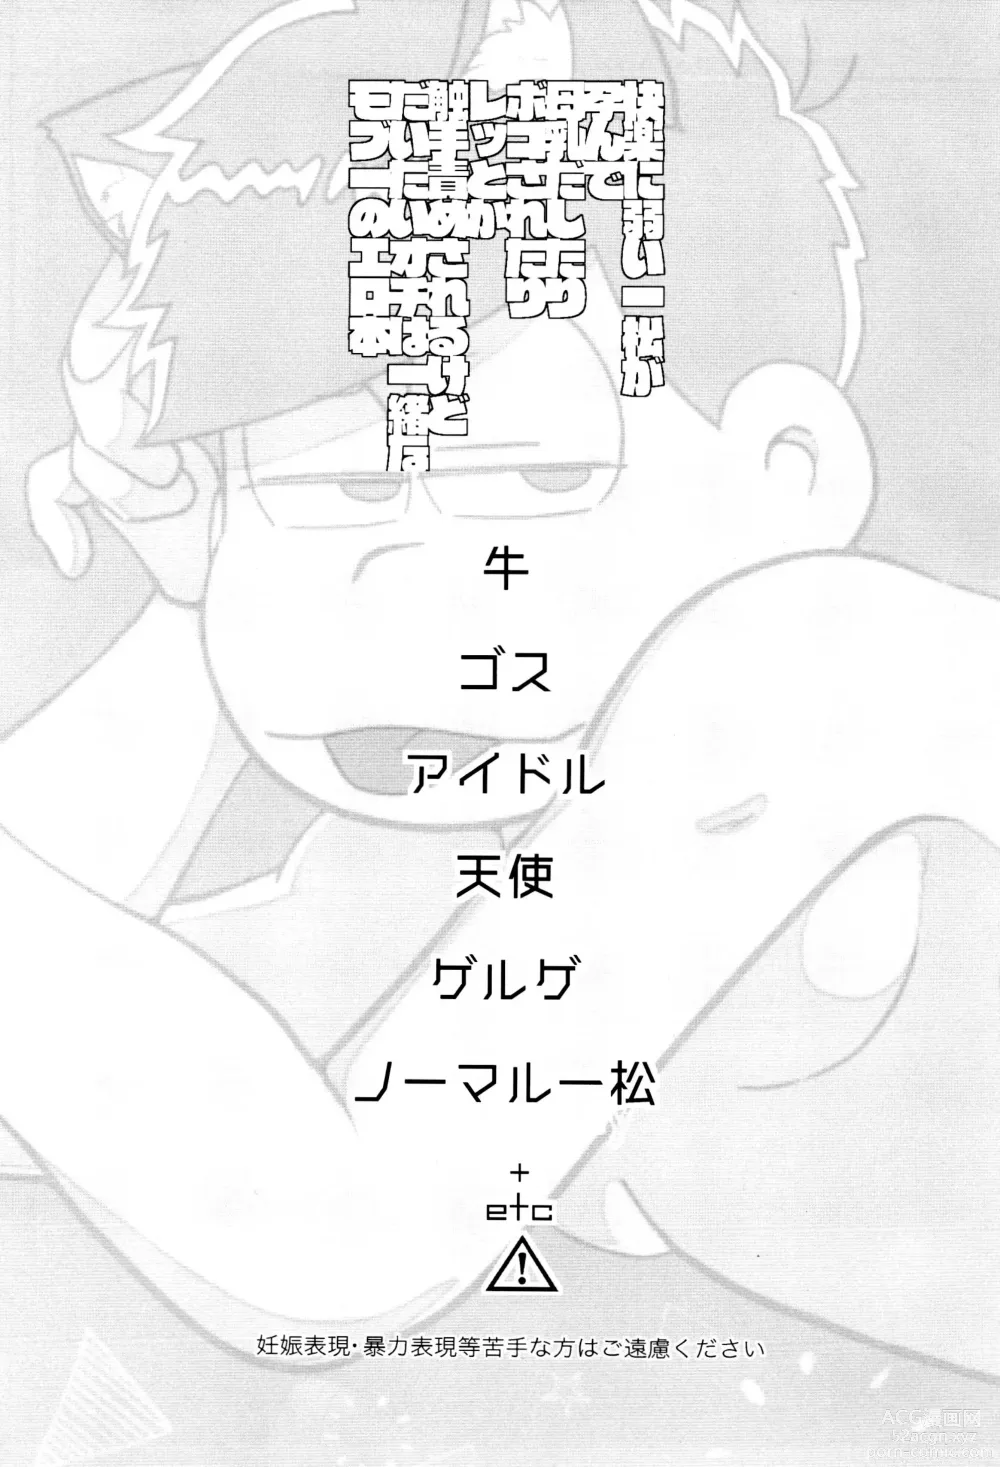 Page 2 of doujinshi Kairaku ni yowai Ichimatsu ga harande bonyū dashi tari boko sa re tari rettoka shokushuzeme sa rerukedo daitai ochi wa isshona mobu ichi no erobon